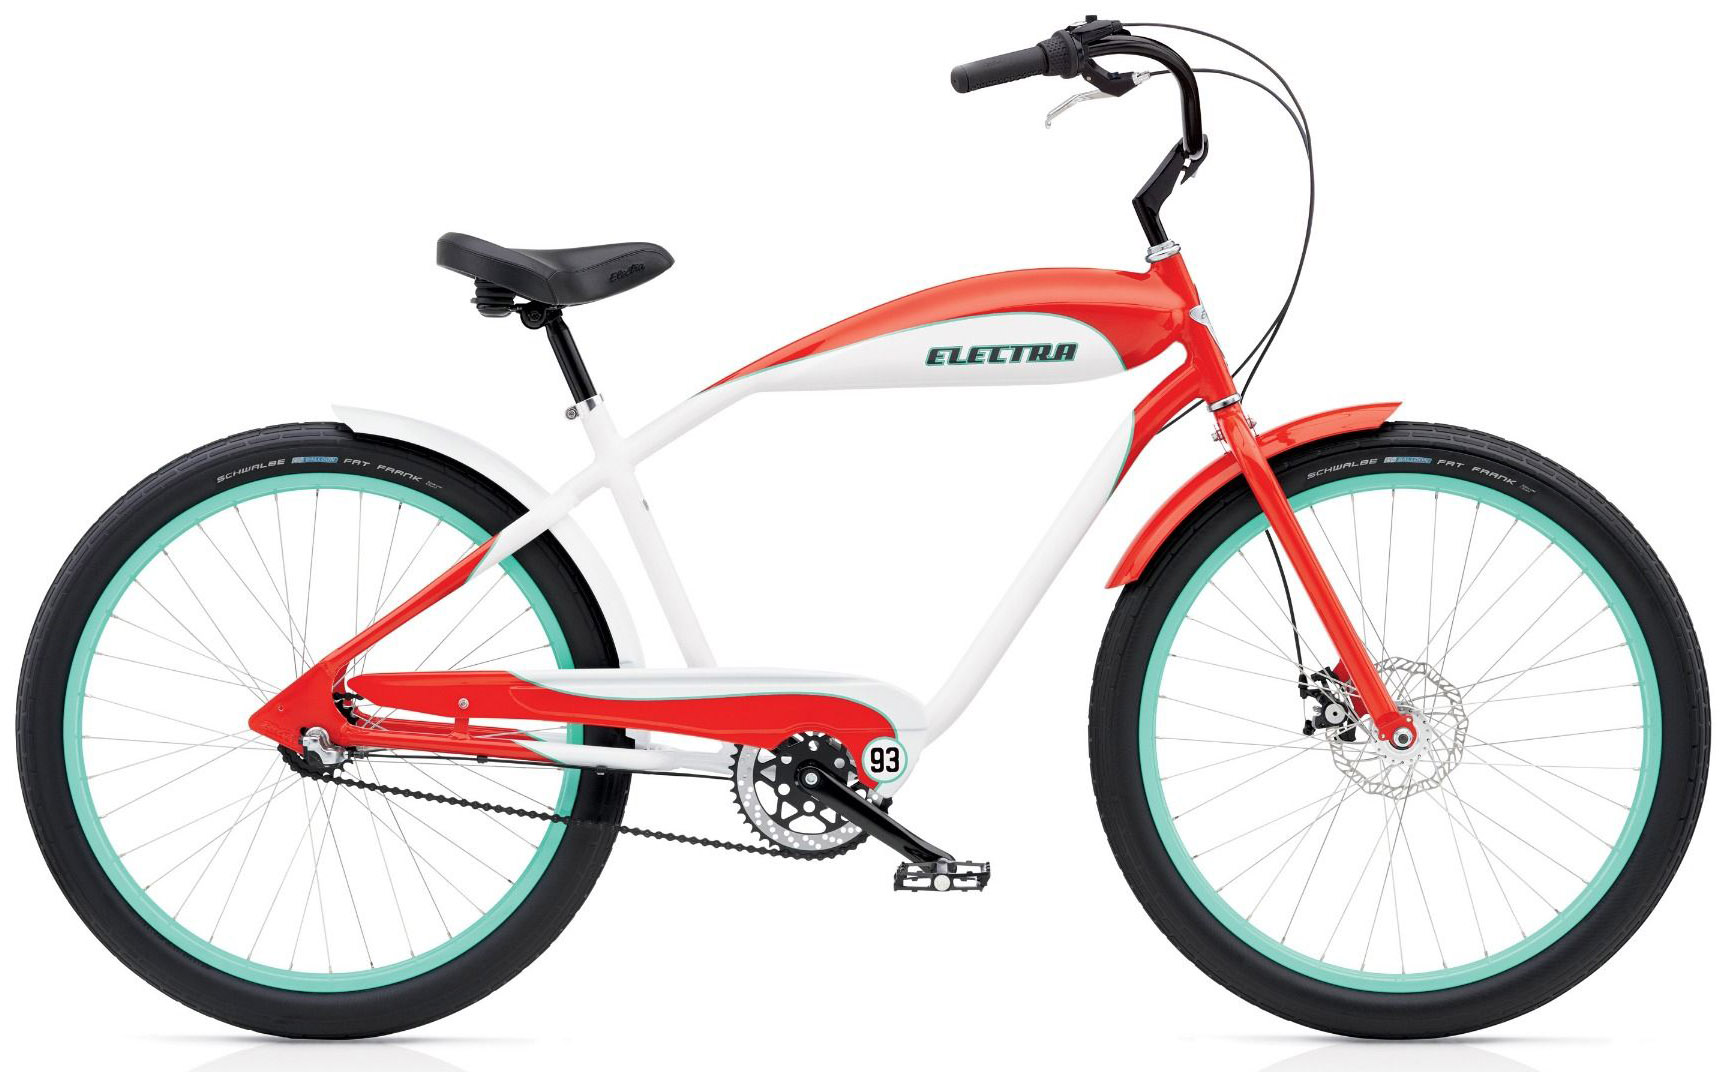  Велосипед Electra EBC93 3i 2020